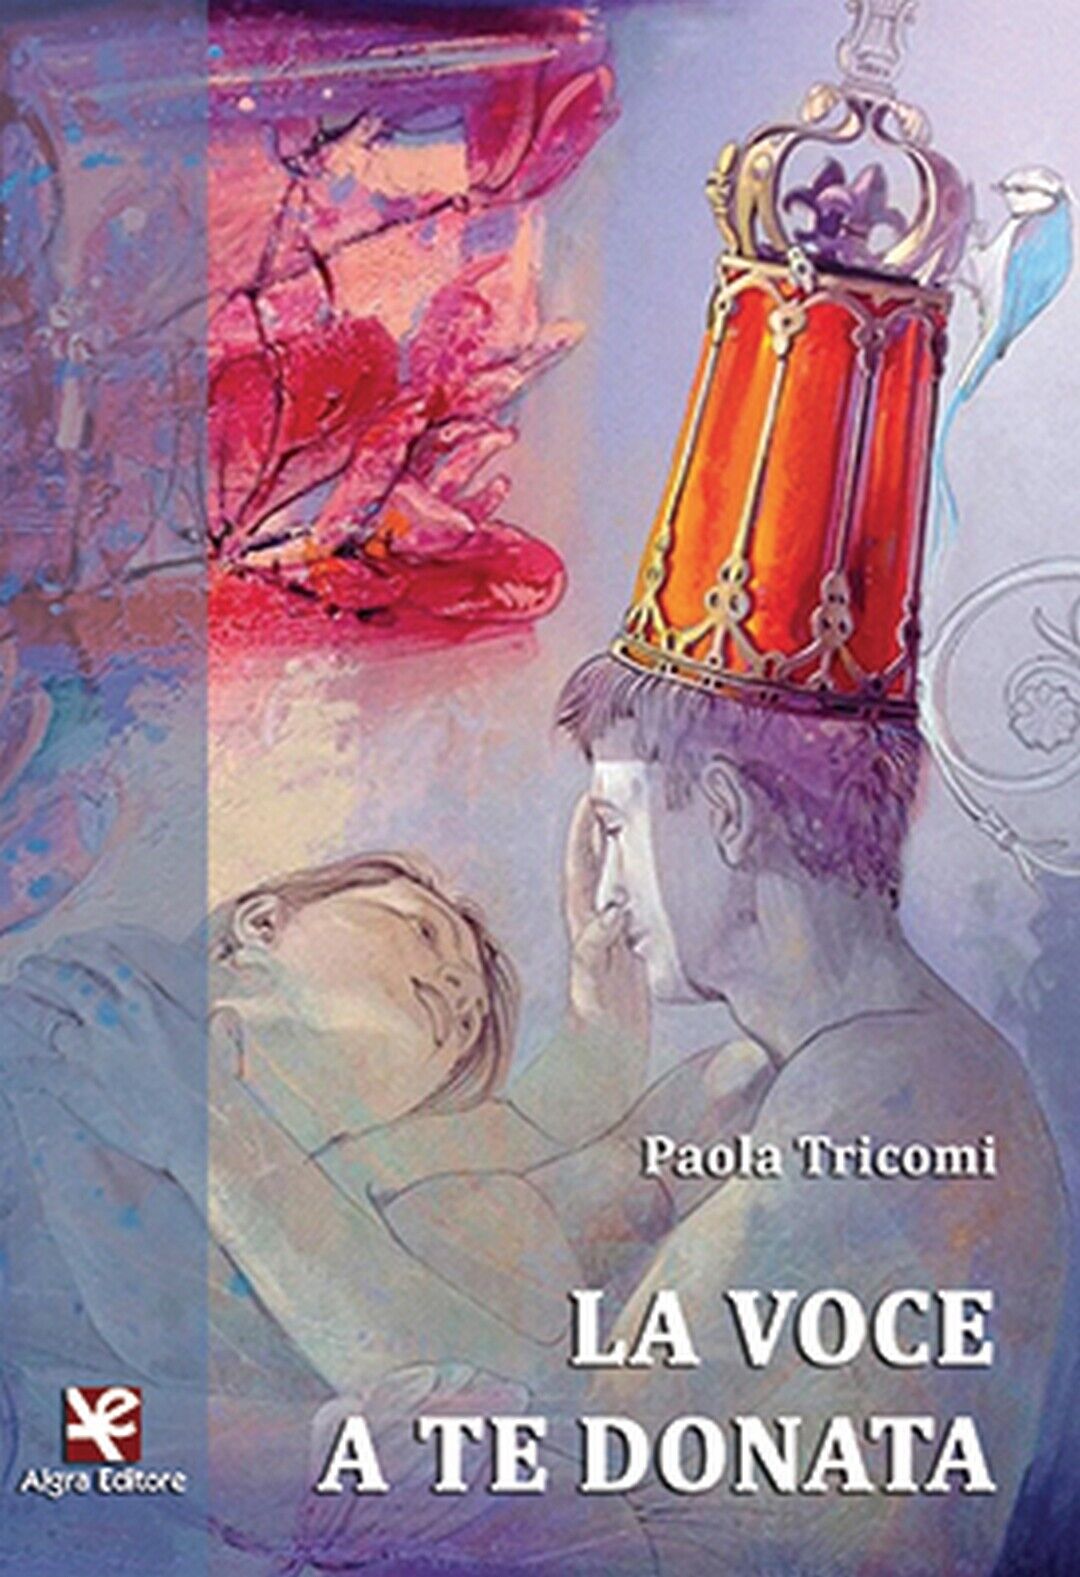 La voce a te donata  di Paola Tricomi,  Algra Editore libro usato